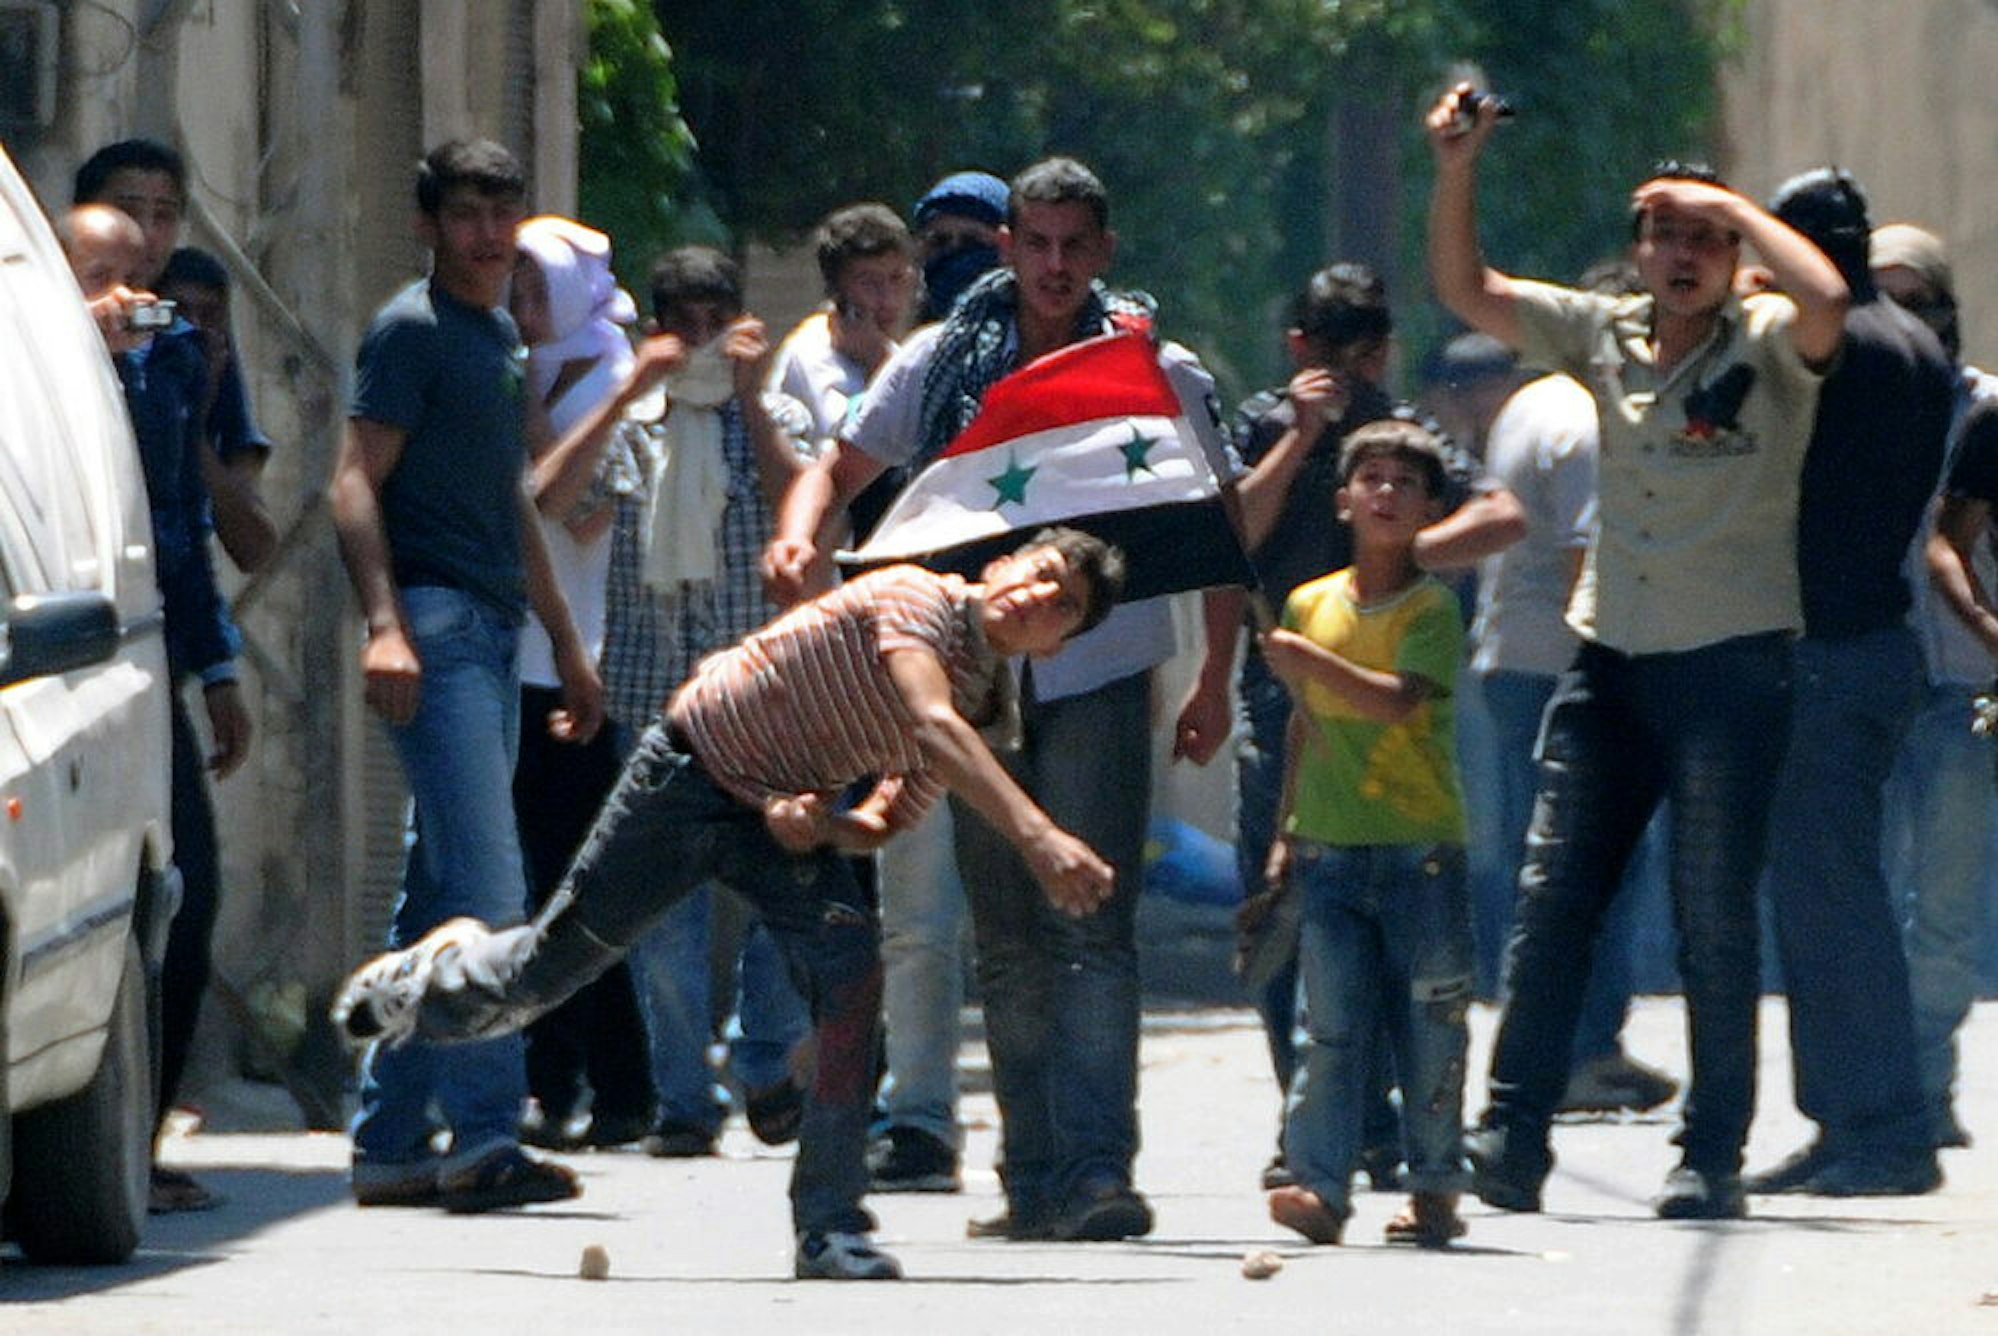 Junge Männer demonstrieren am 1. Juli 2011 in Barzeh, einem Vorort von Damaskus, gegen die syrische Regierung.